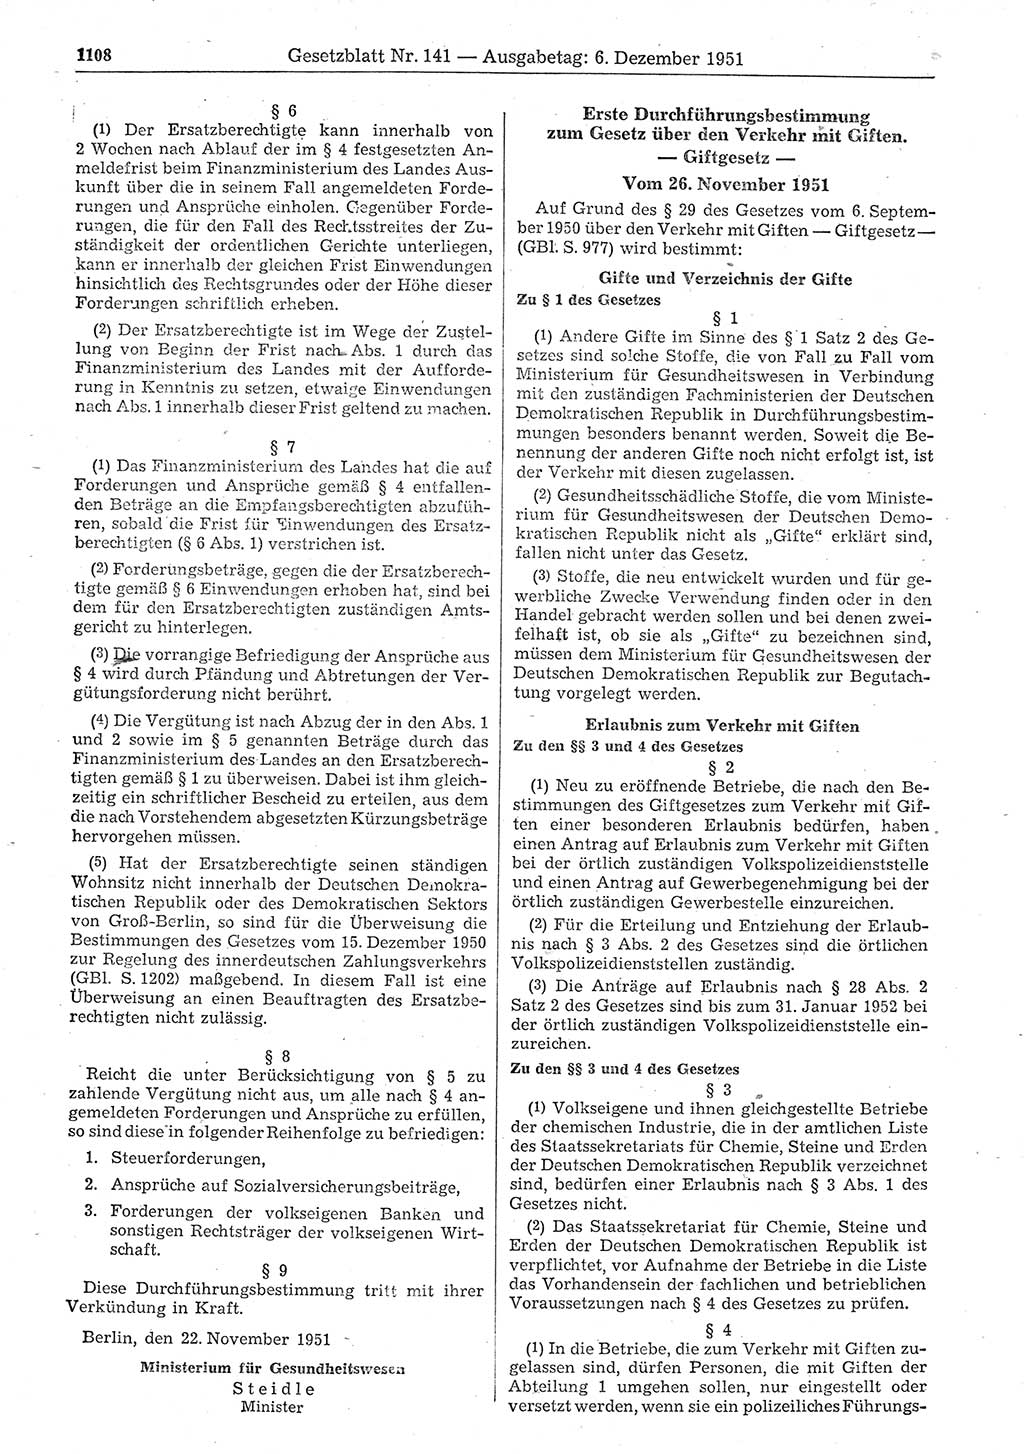 Gesetzblatt (GBl.) der Deutschen Demokratischen Republik (DDR) 1951, Seite 1108 (GBl. DDR 1951, S. 1108)